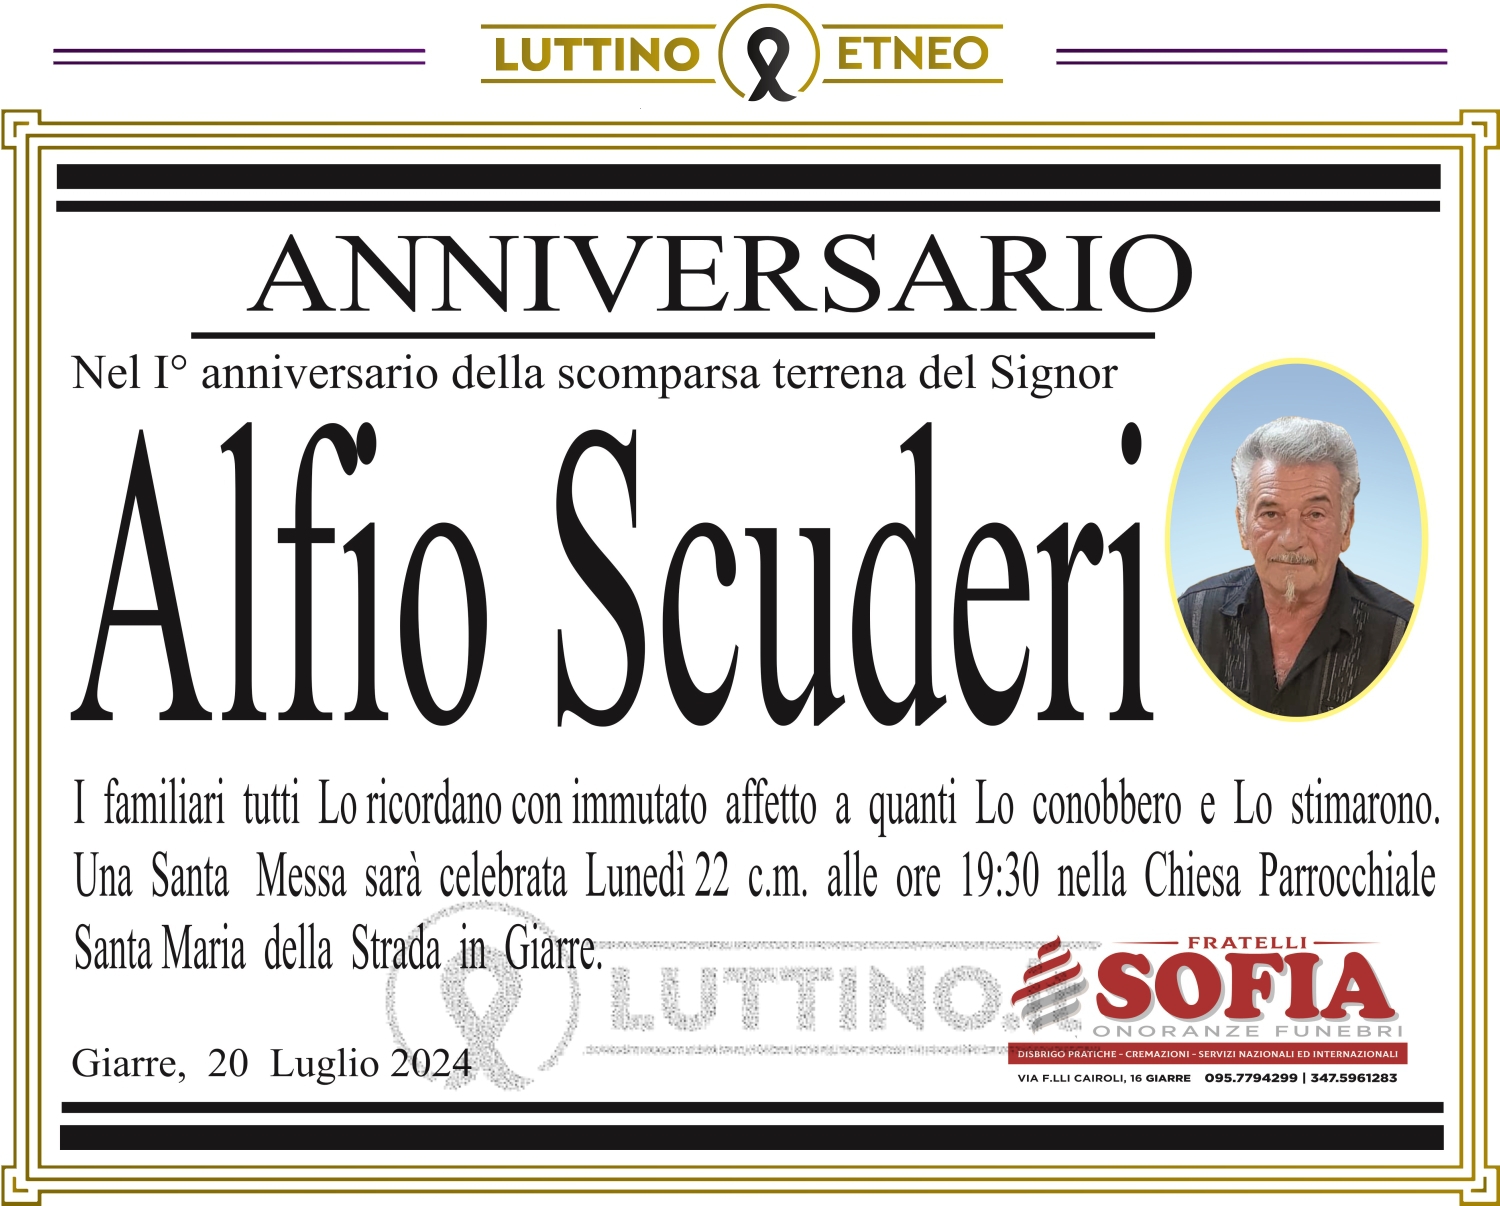 Alfio Scuderi